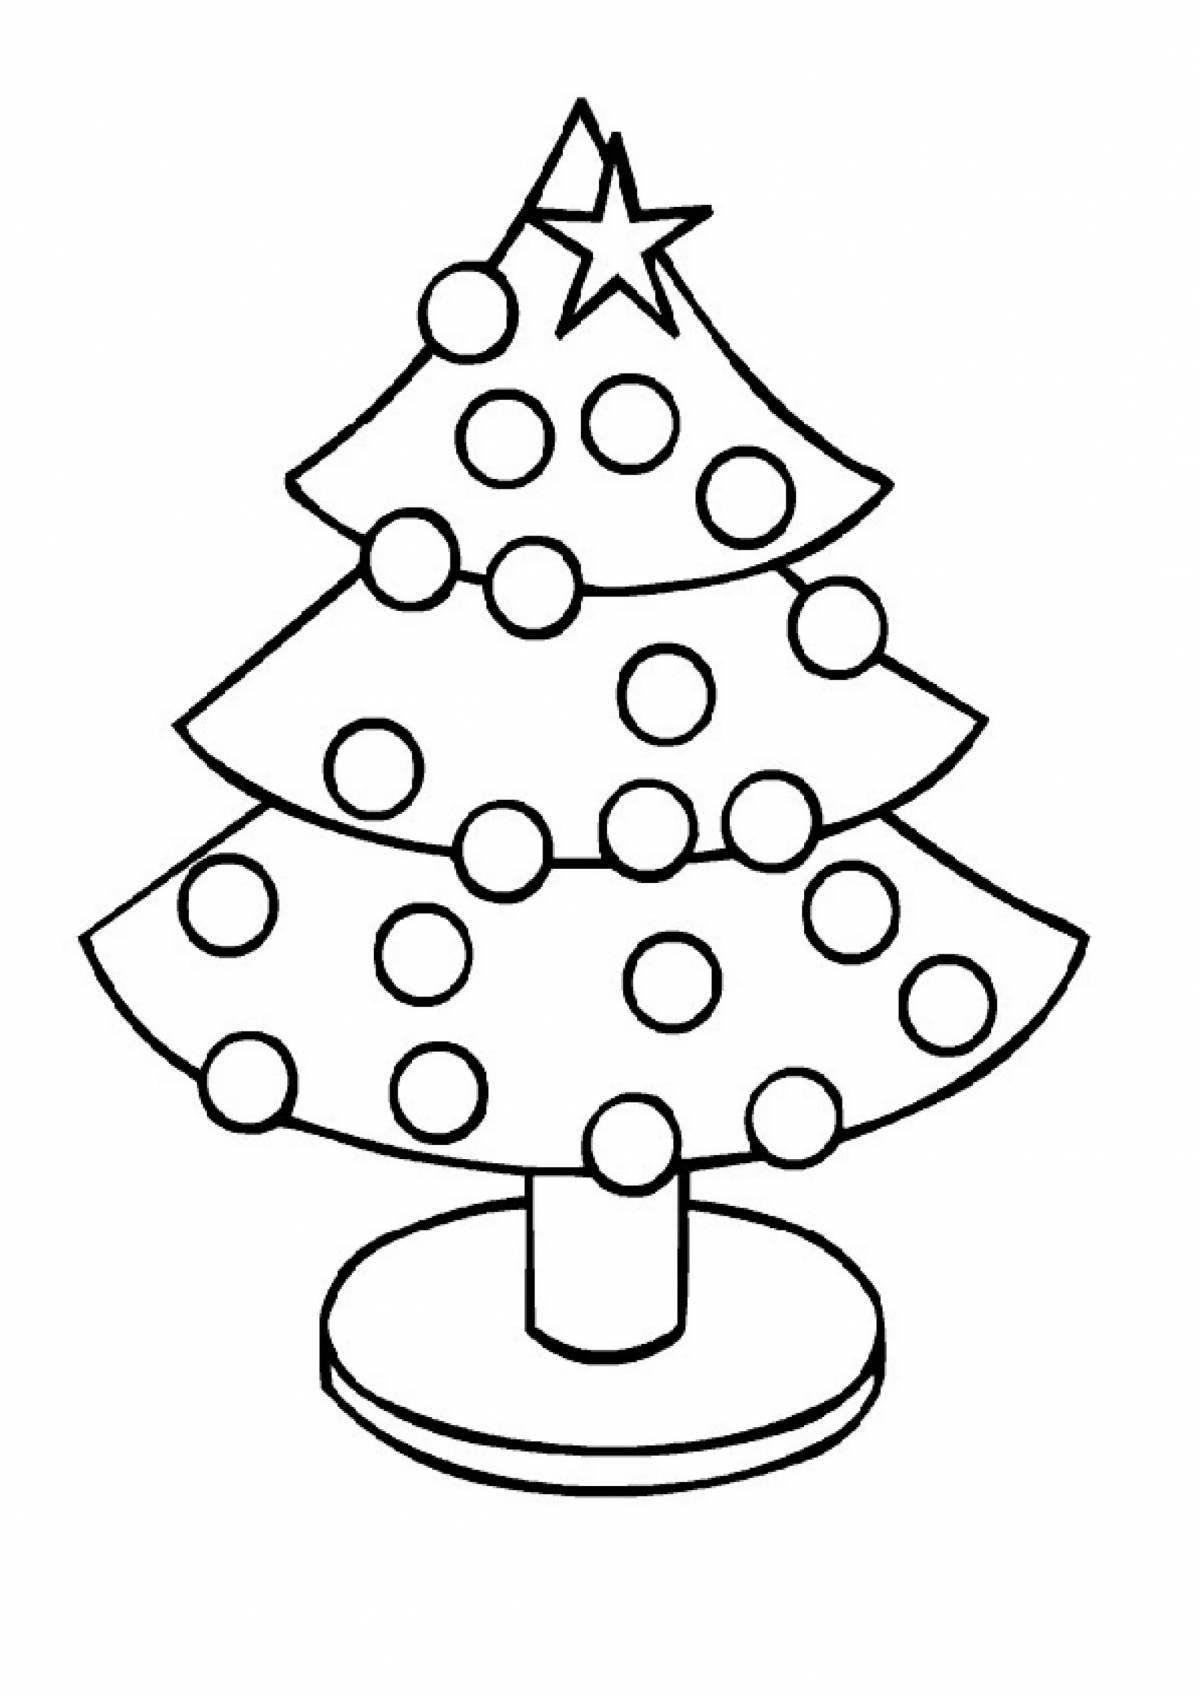 Увлекательная раскраска «рождественская елка» для детей